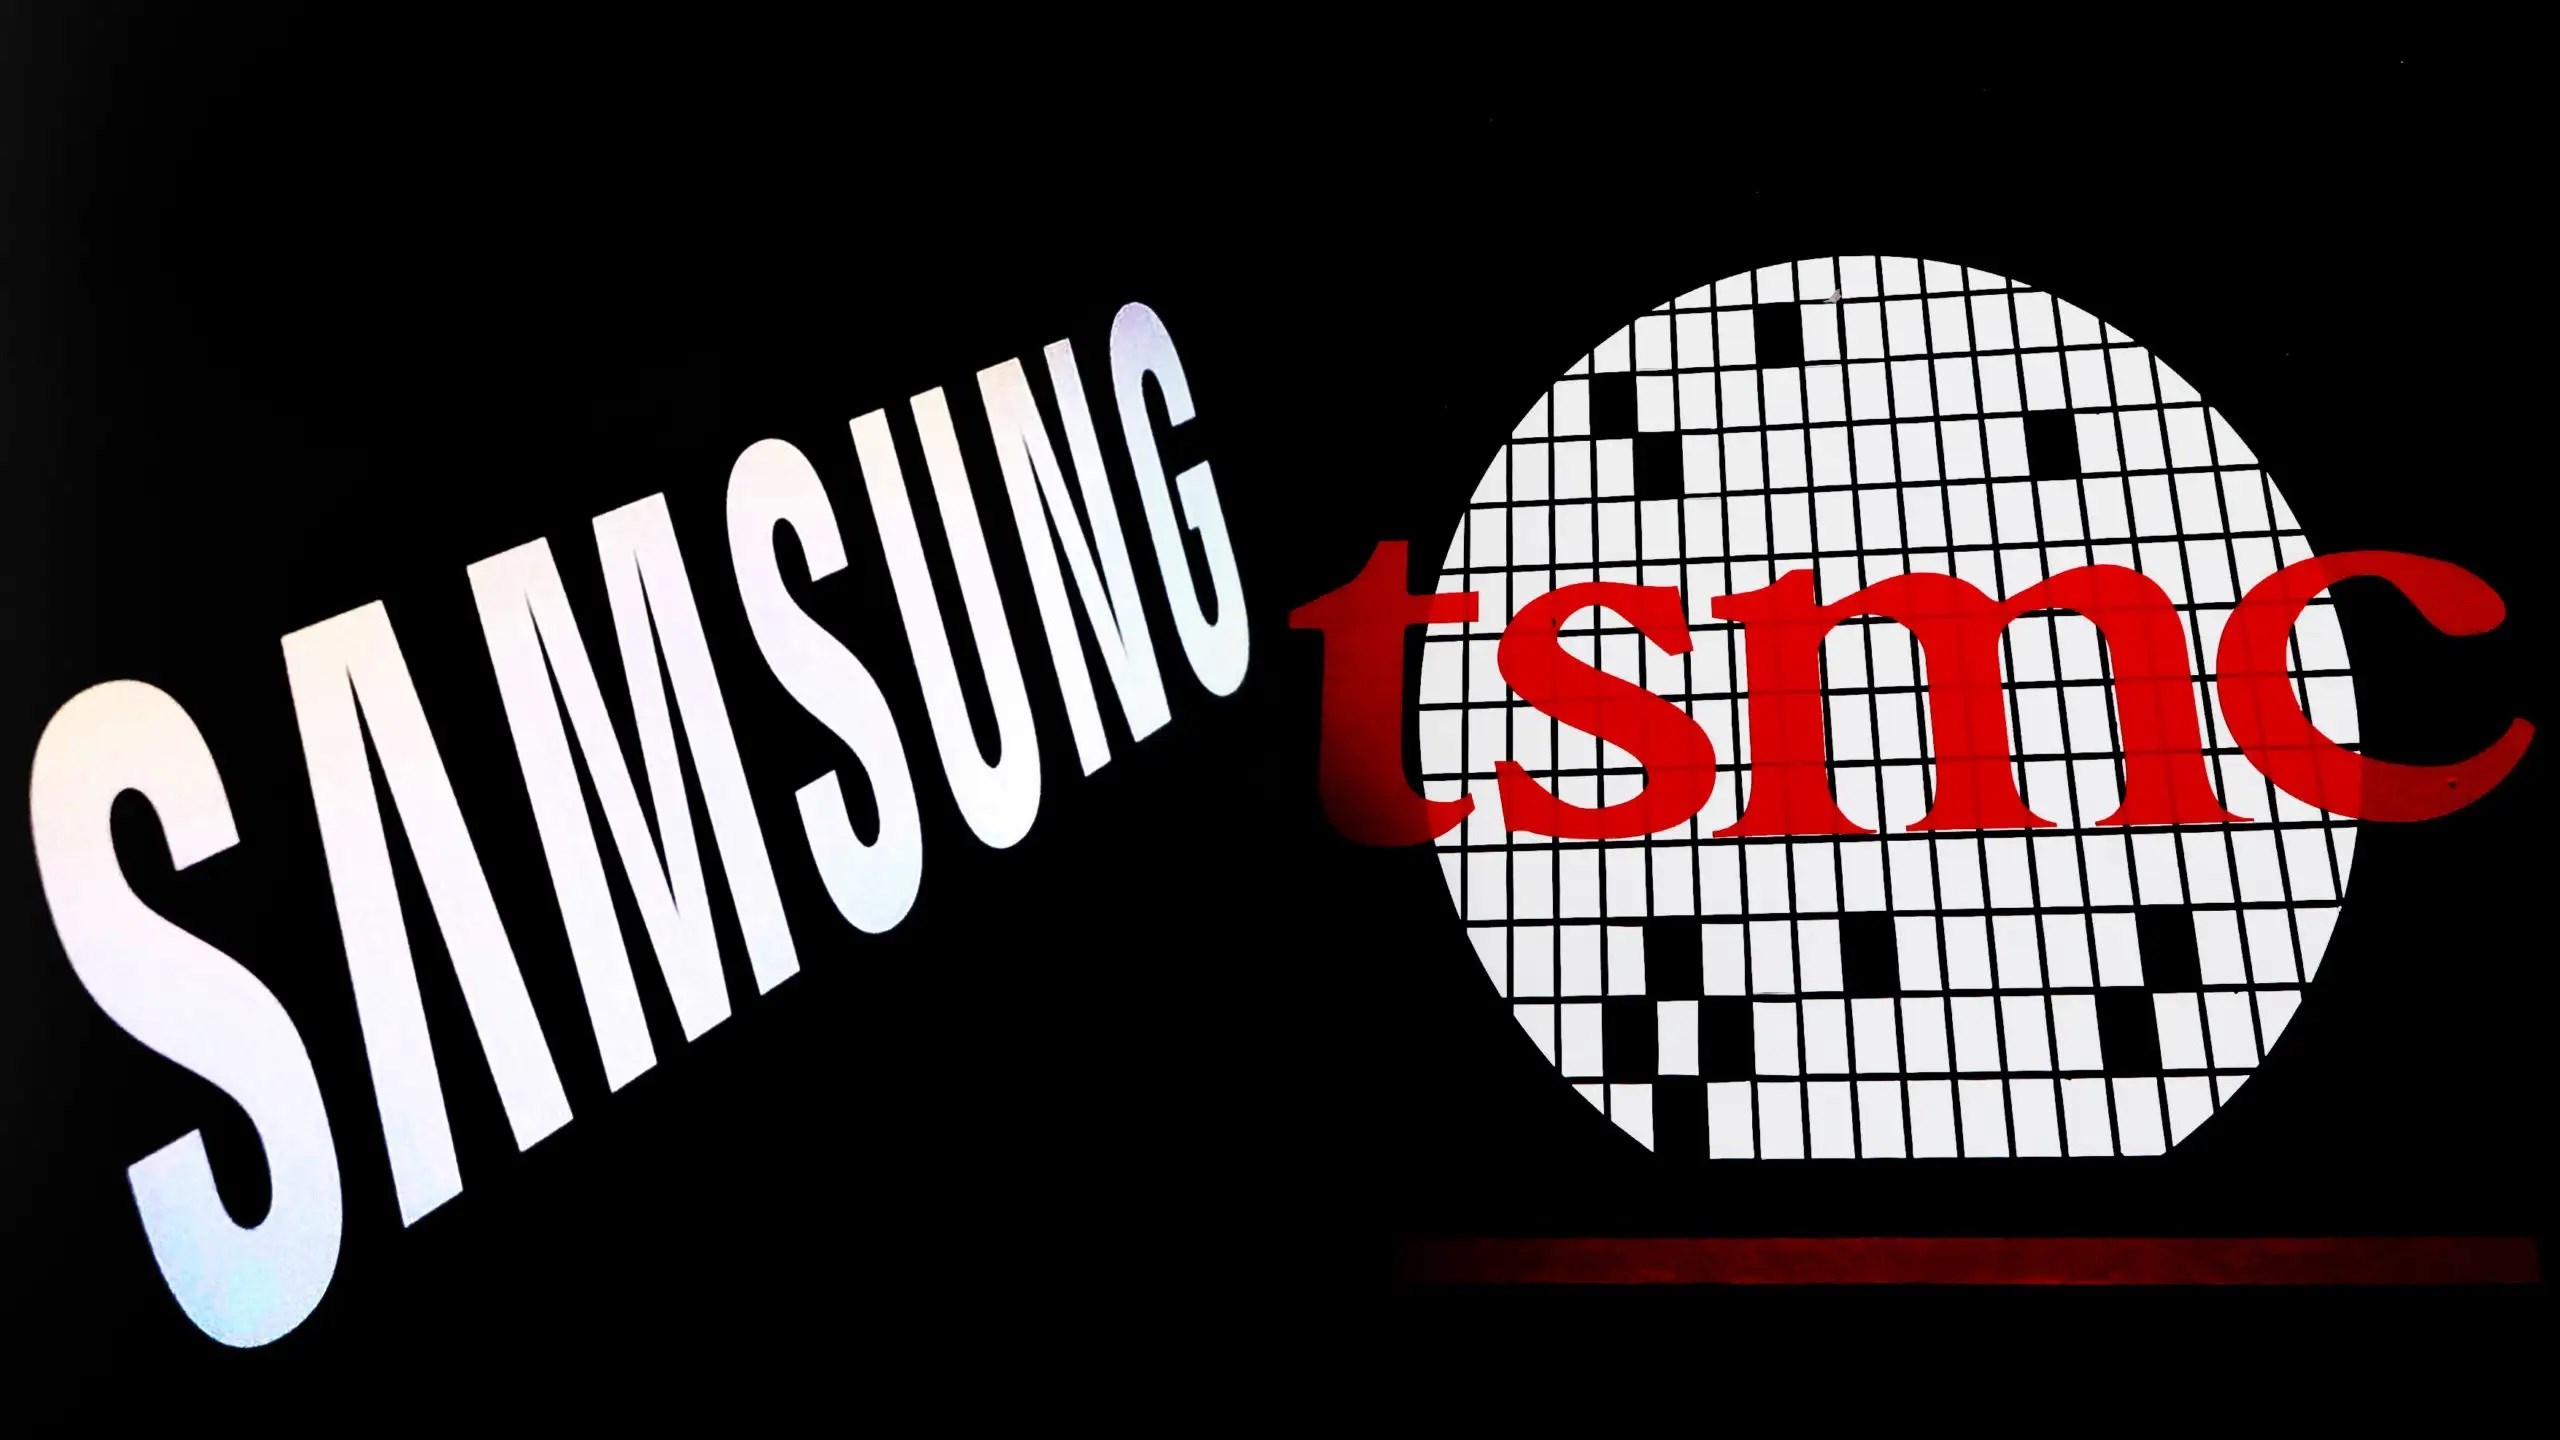 Samsung, beş yıl içinde TSMC’yi geçmeyi planlıyor